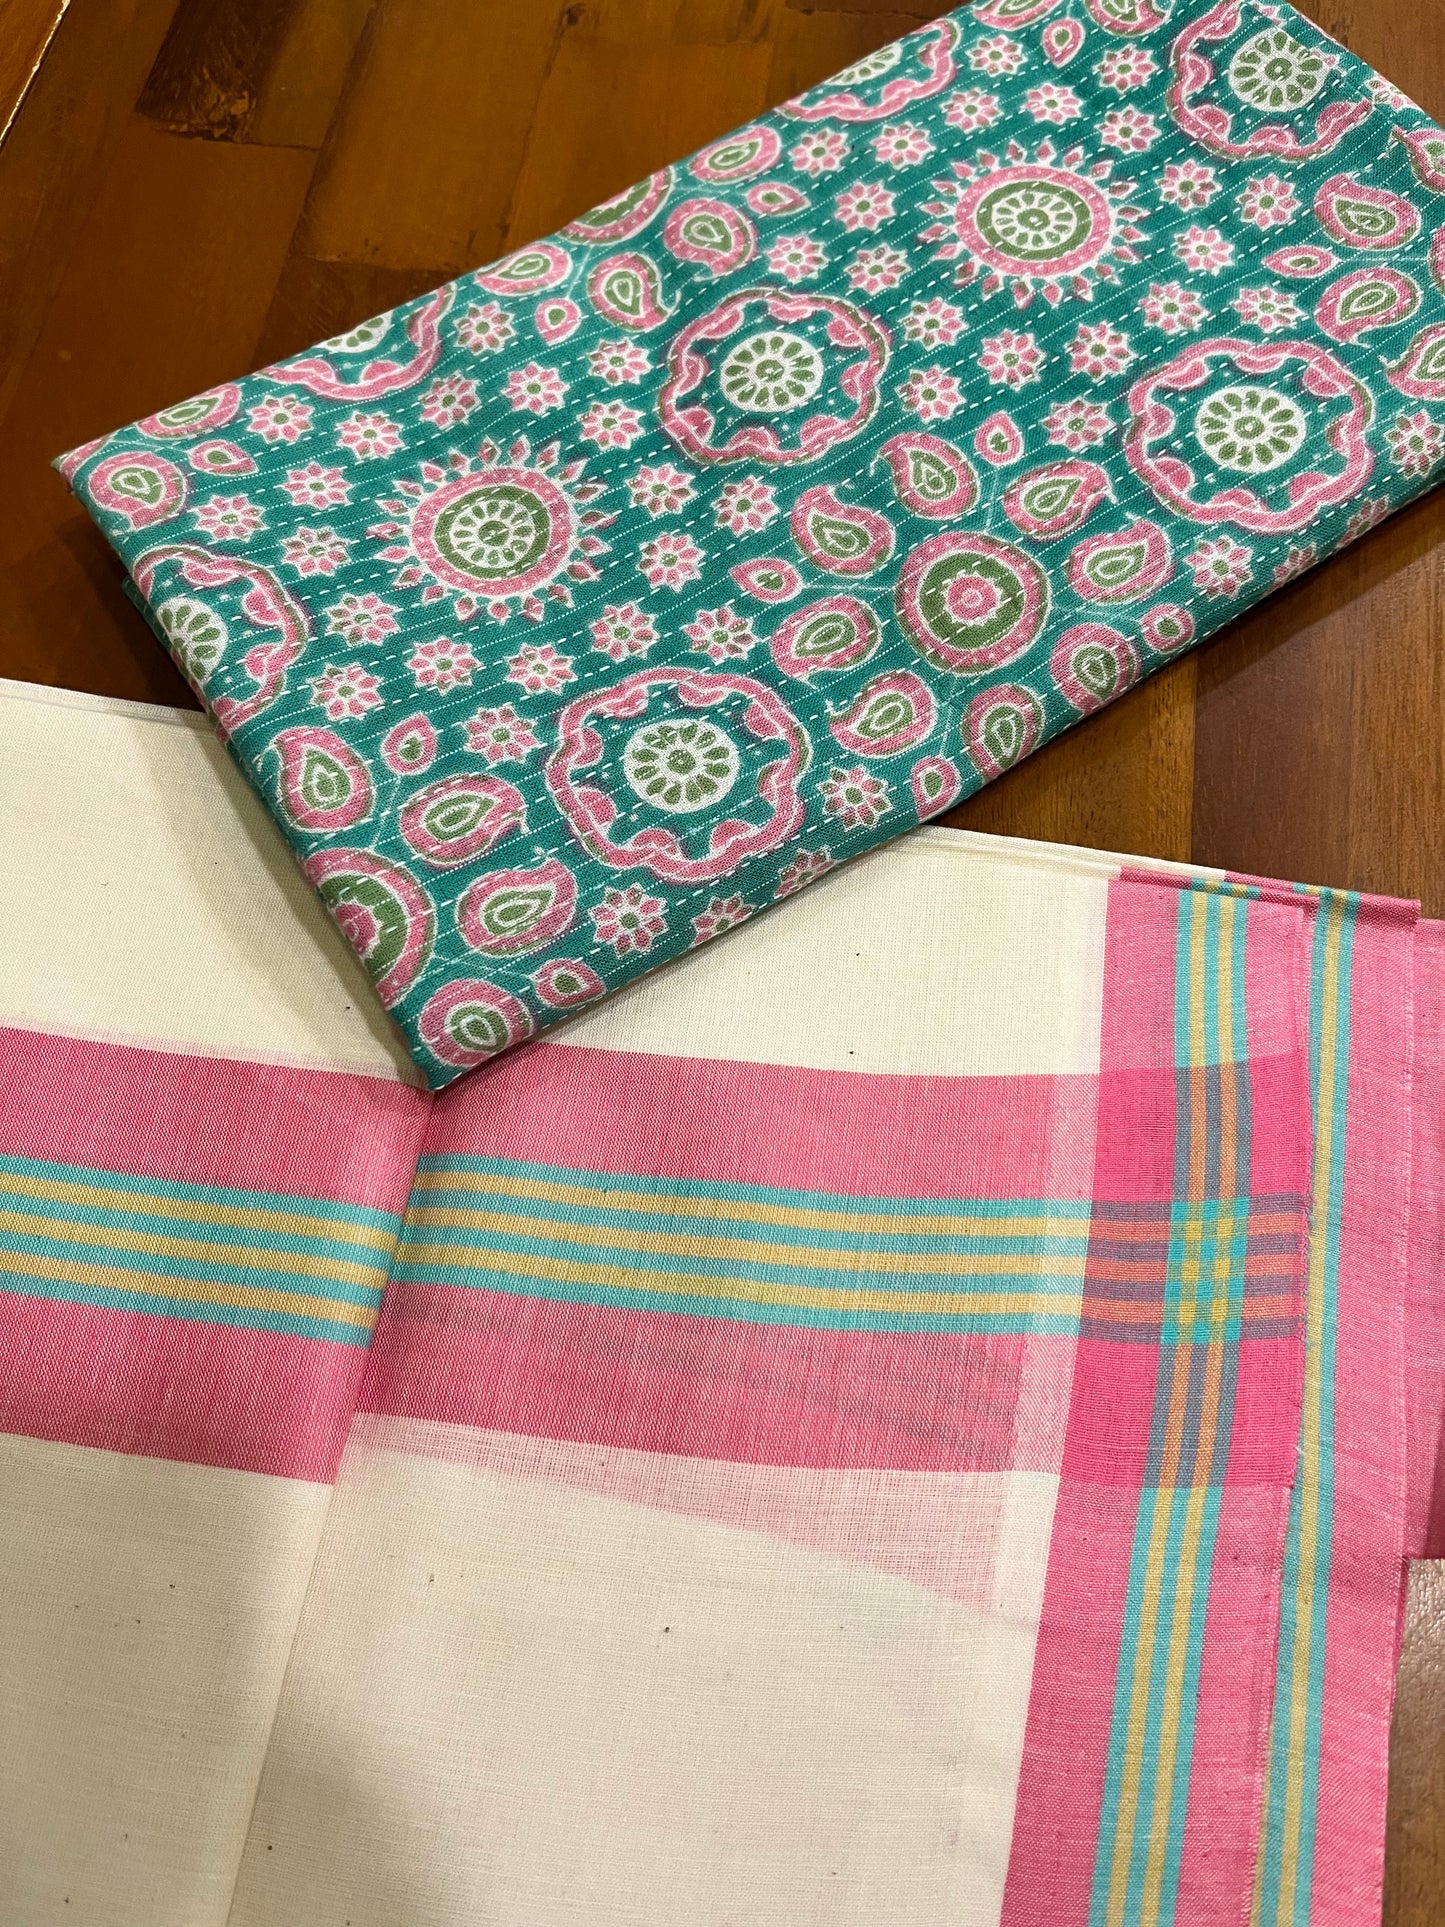 Southloom Mulloth Soft Cotton Set Mundu with Jaipur Printed Blouse Piece (2.60 M Neriyathu / Blouse 1 Meter)